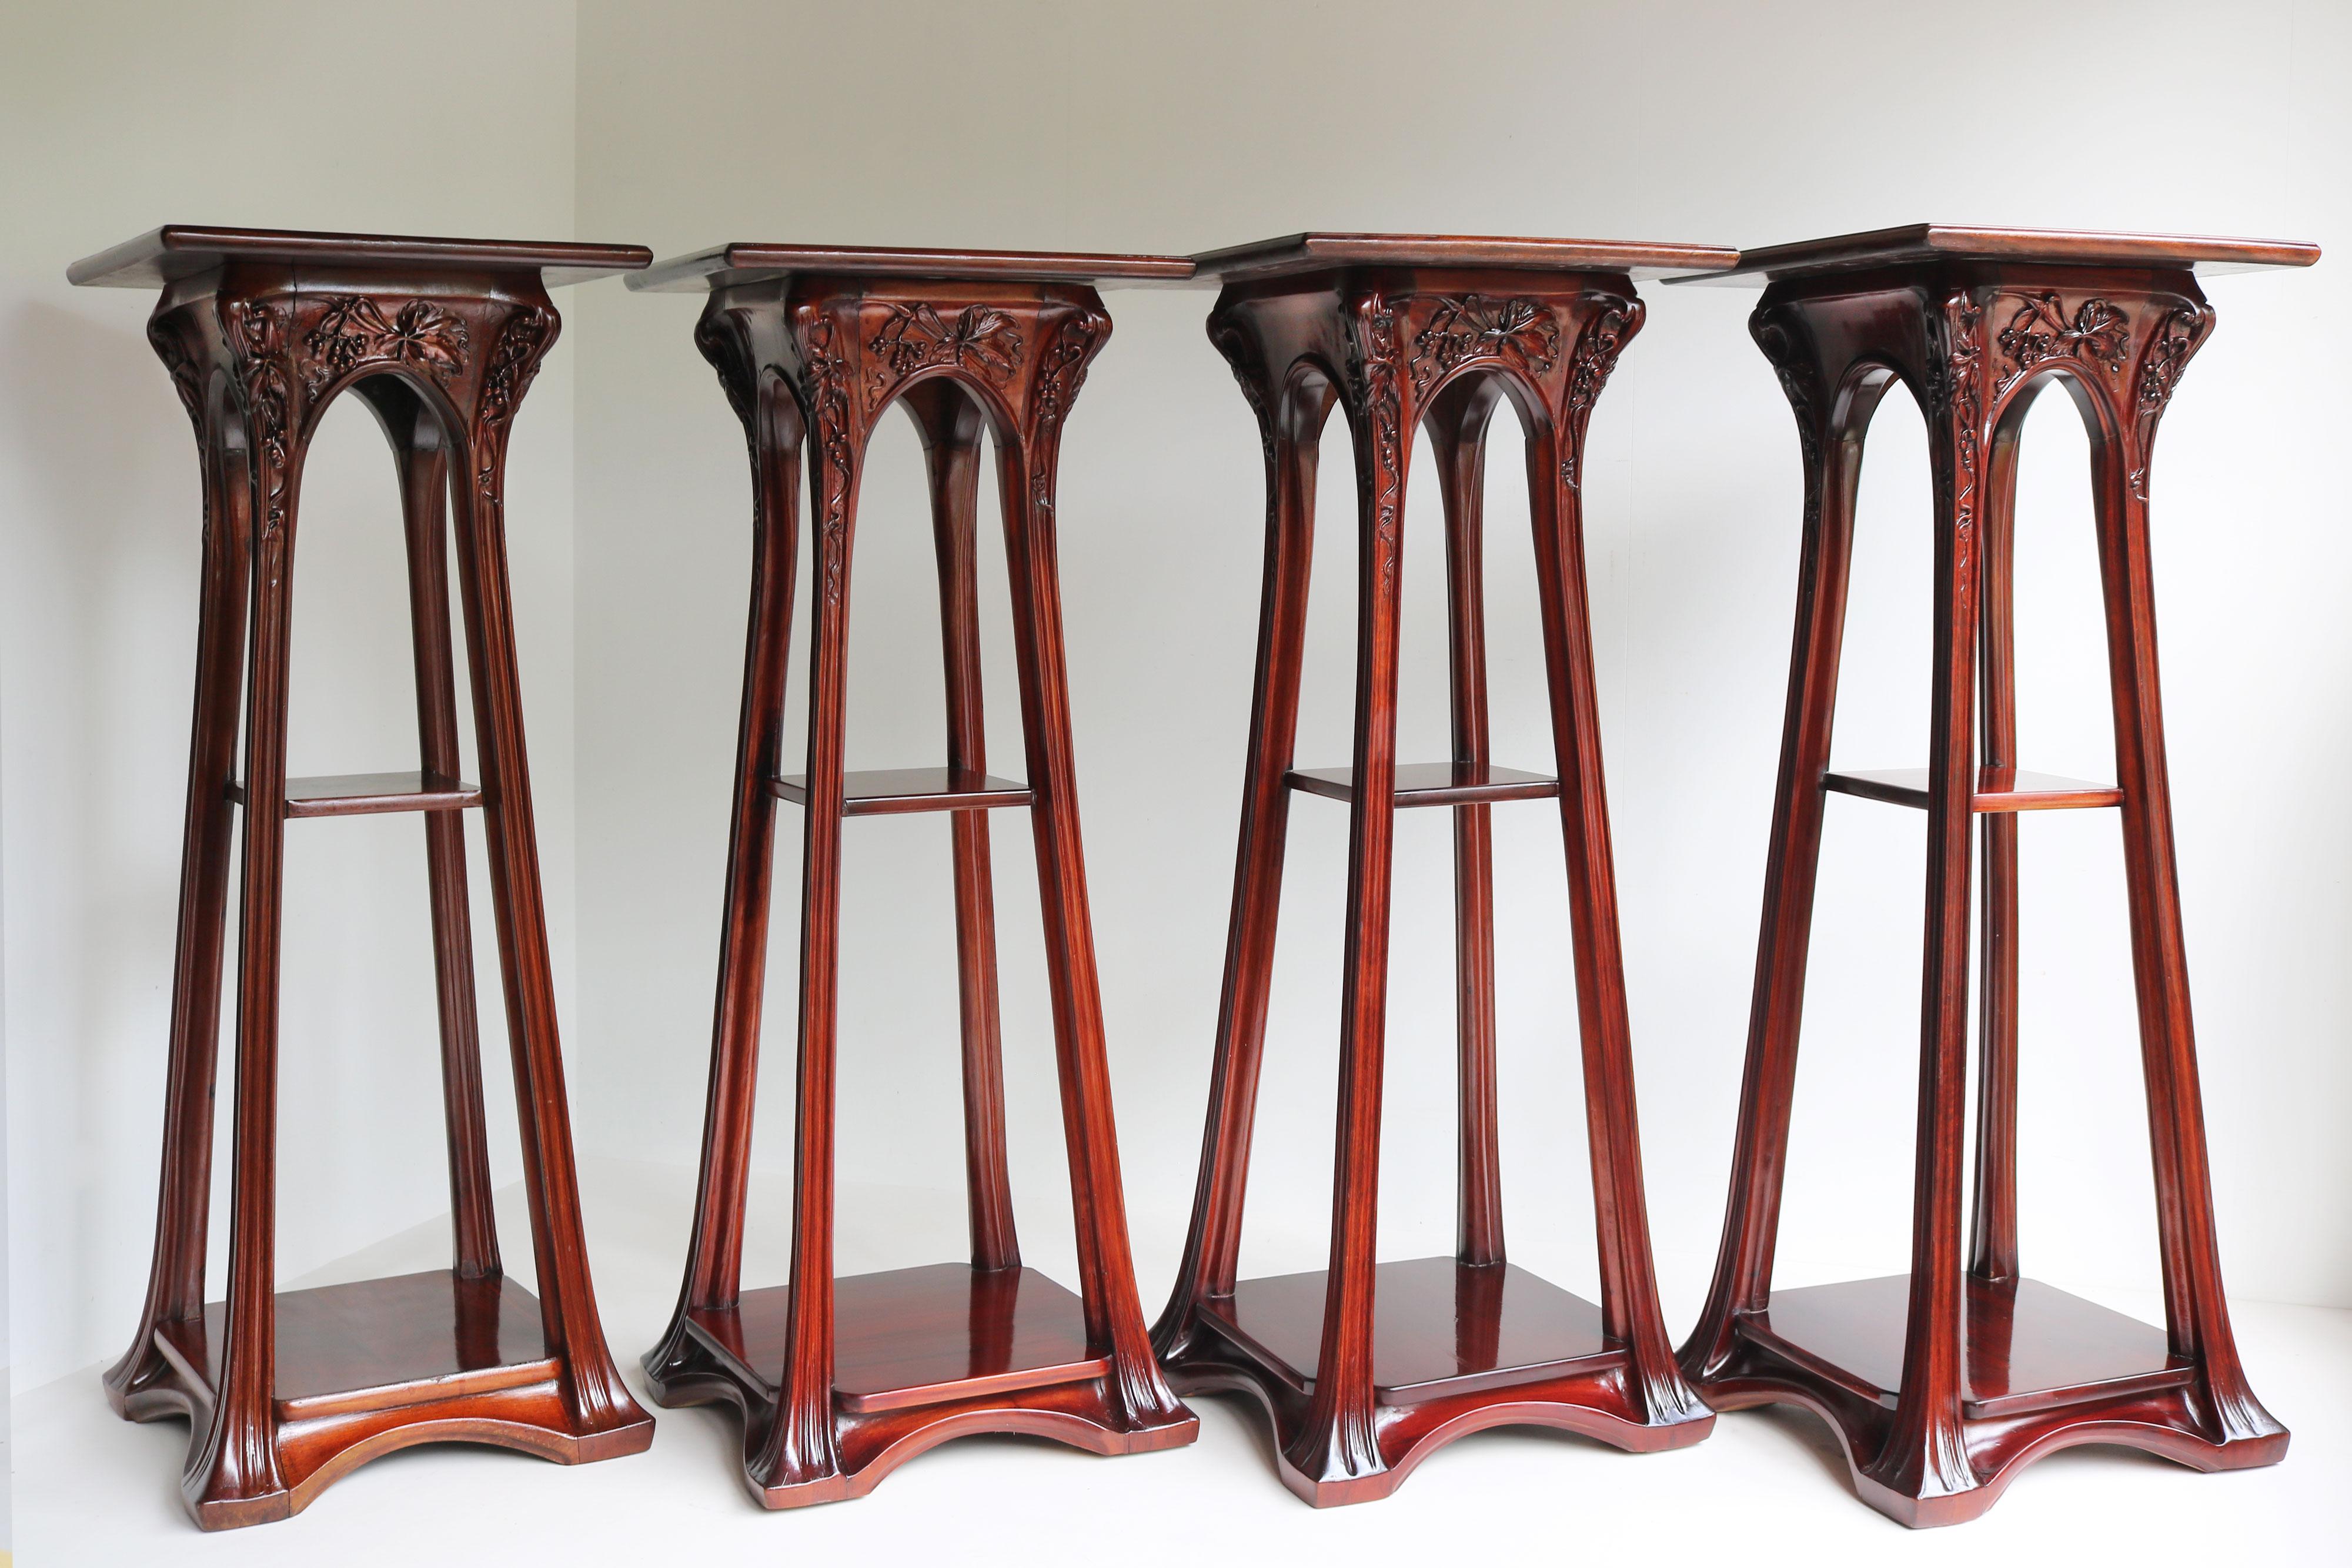 4 matching Art Nouveau plant stands / pedestals by Louis Majorelle Antique 1907 For Sale 15